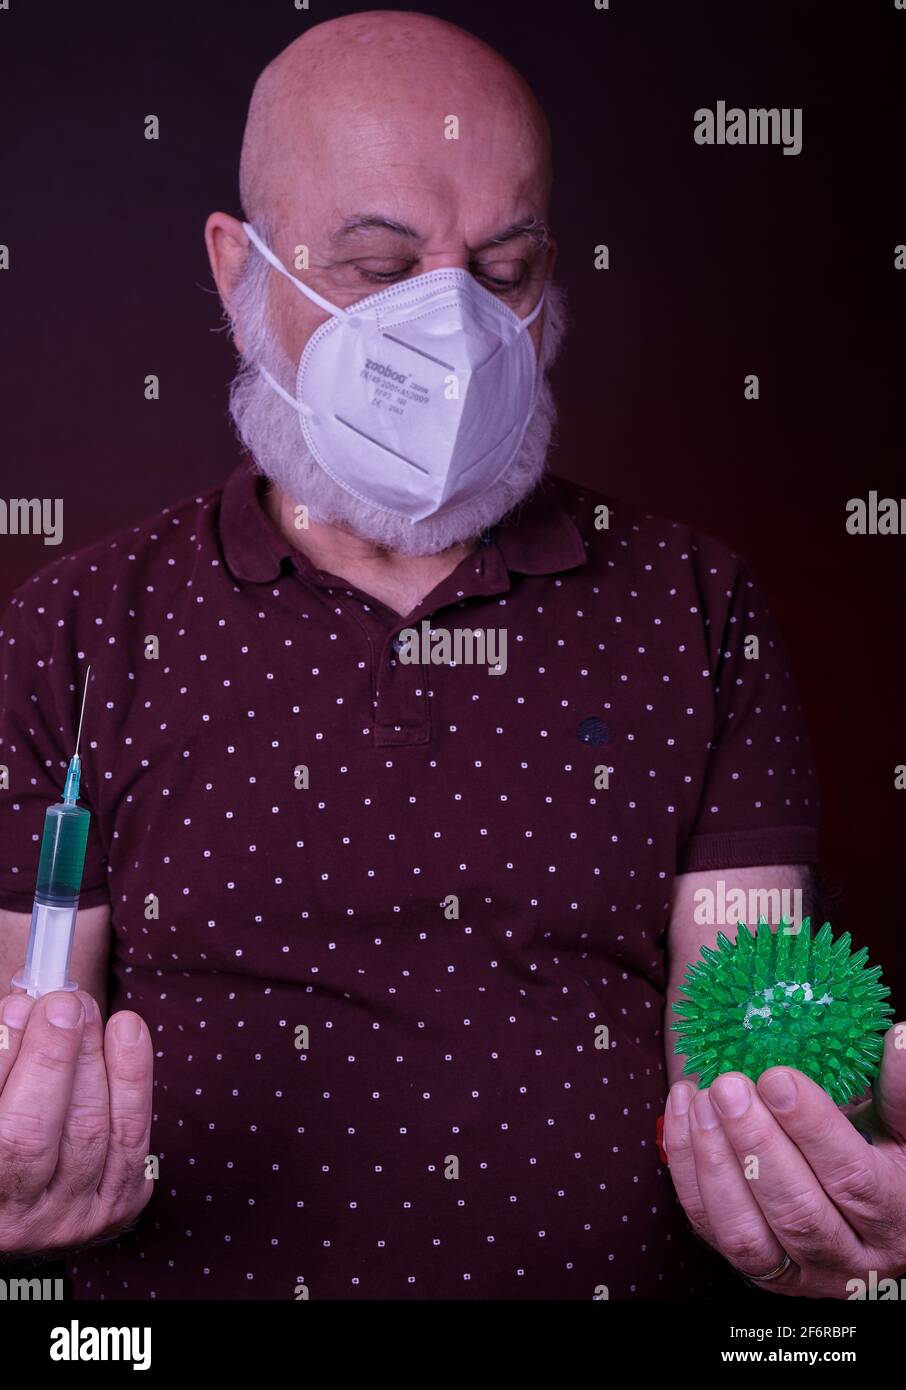 un hombre mayor con máscara protectora sostiene una jeringa de vacuna una mano y una bola verde que representa el virus de la corona en otro Foto de stock